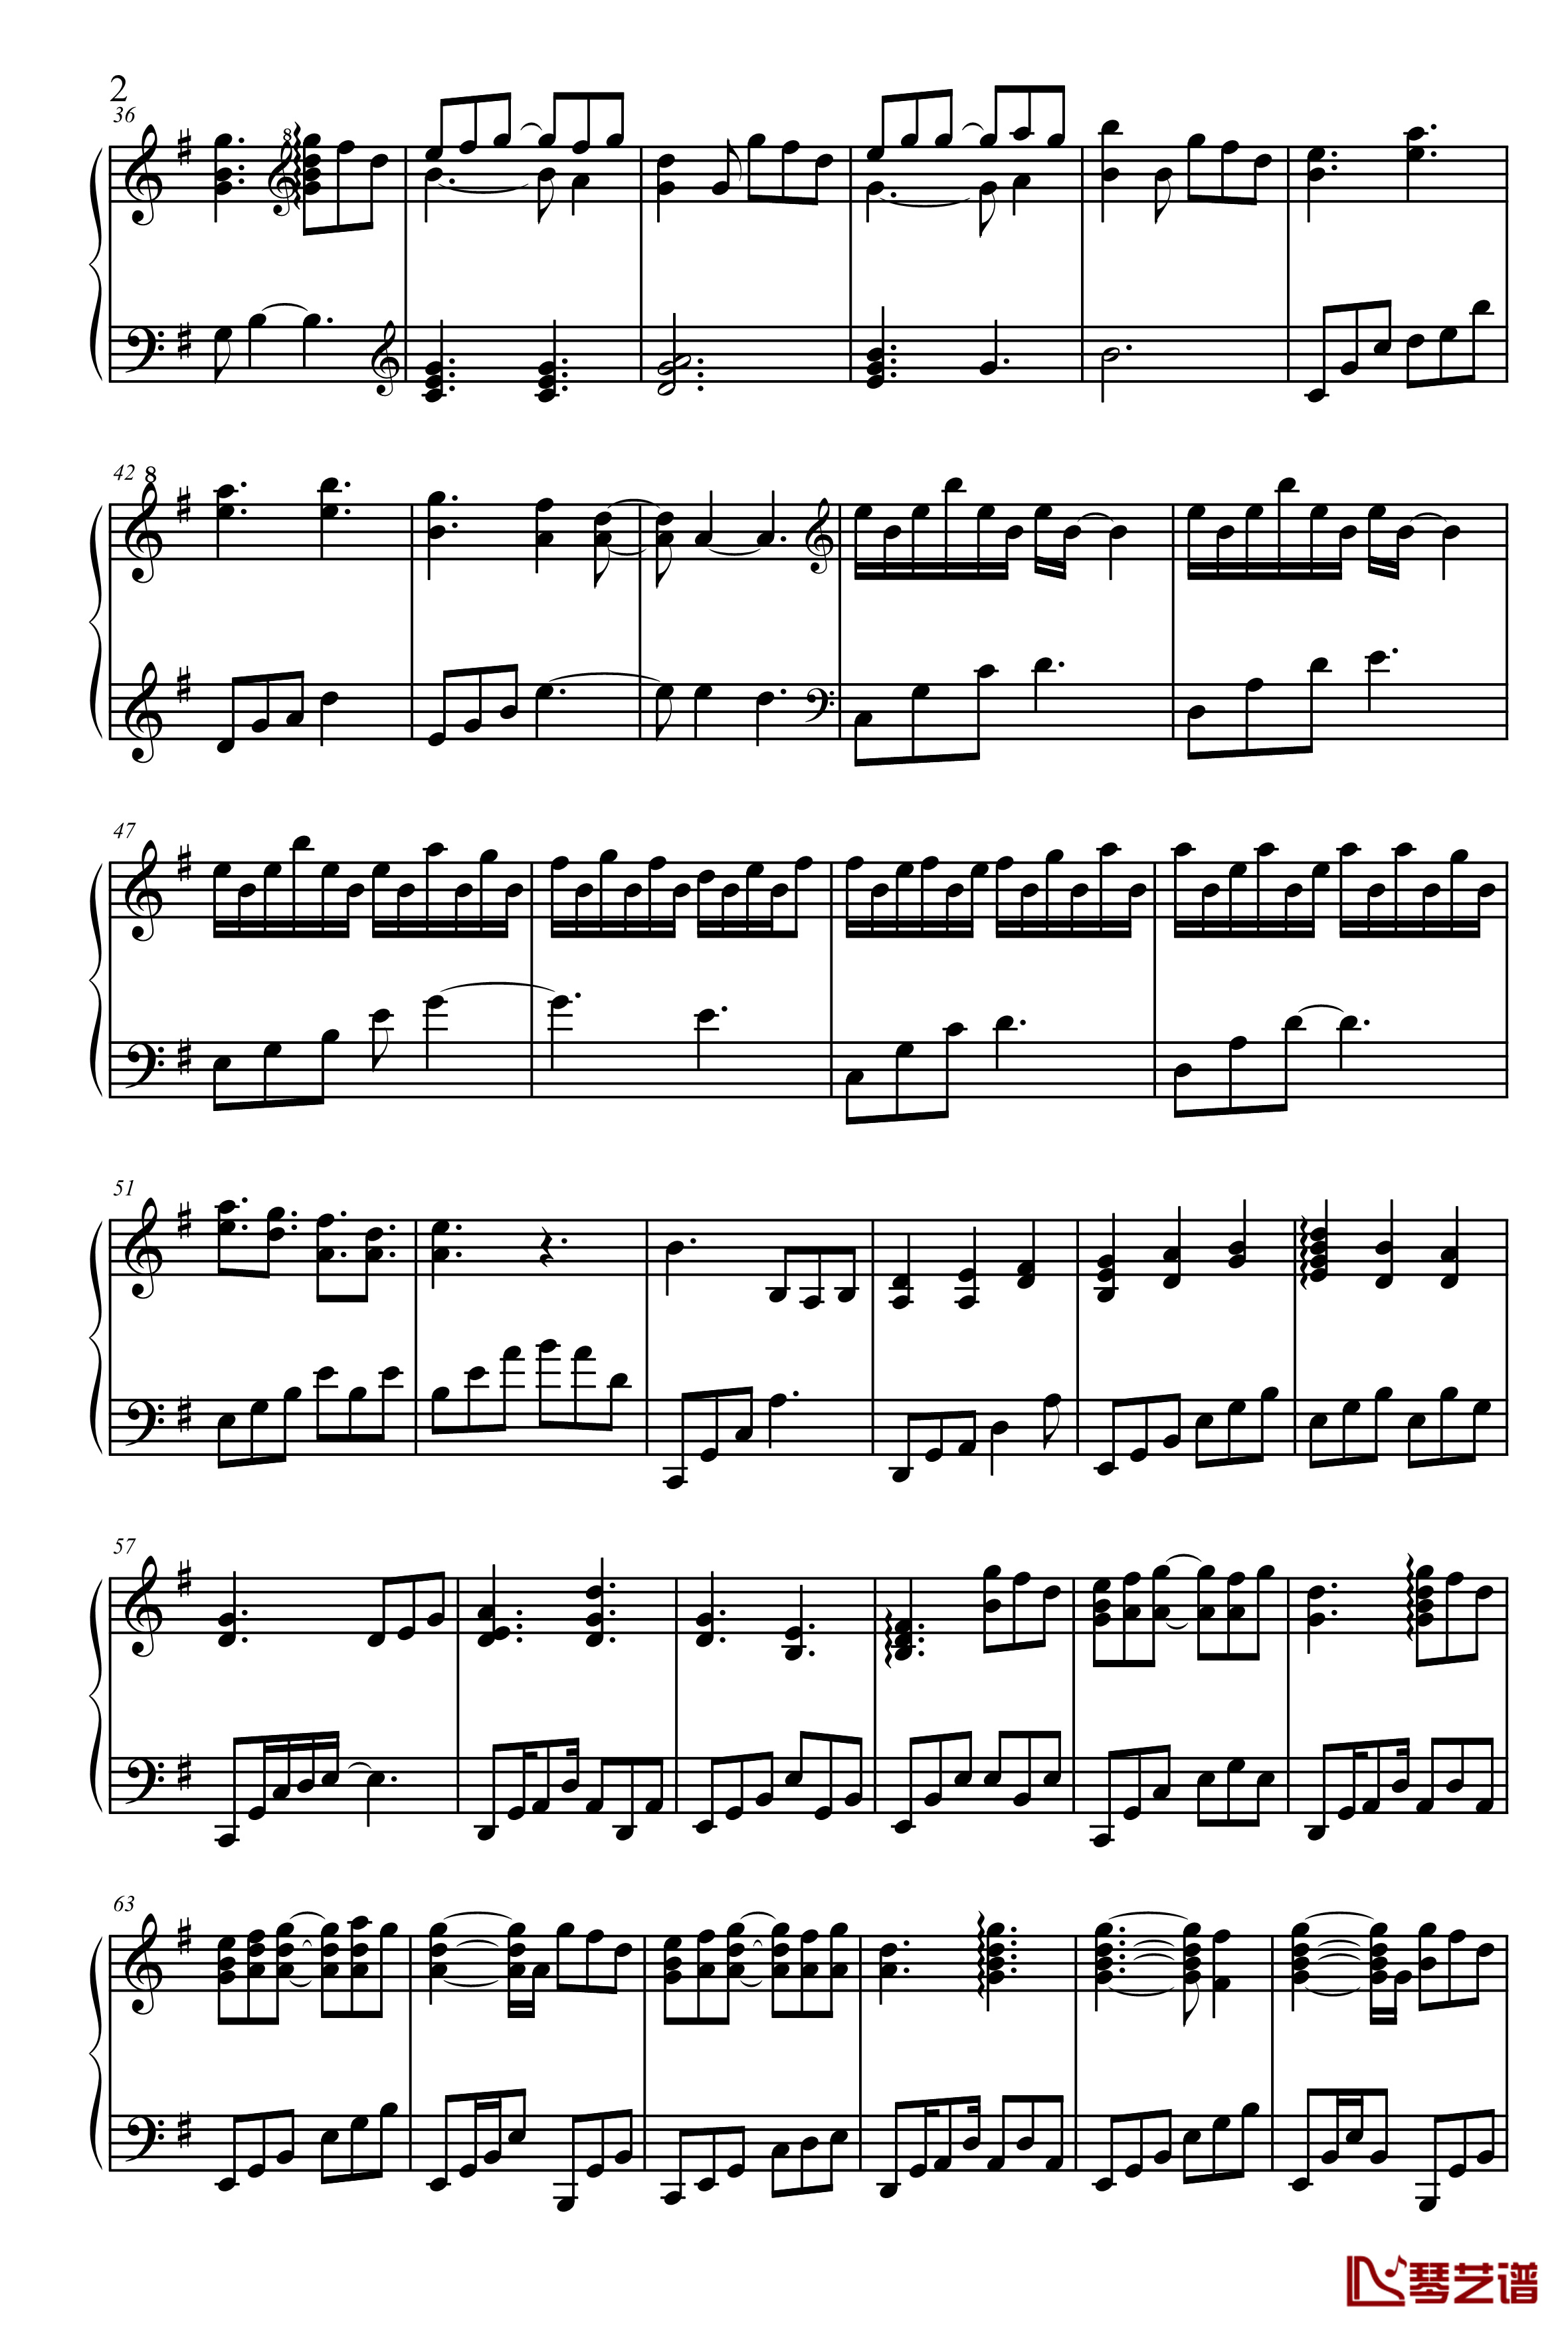 PIANO UC-NO.3钢琴谱-澤野弘之